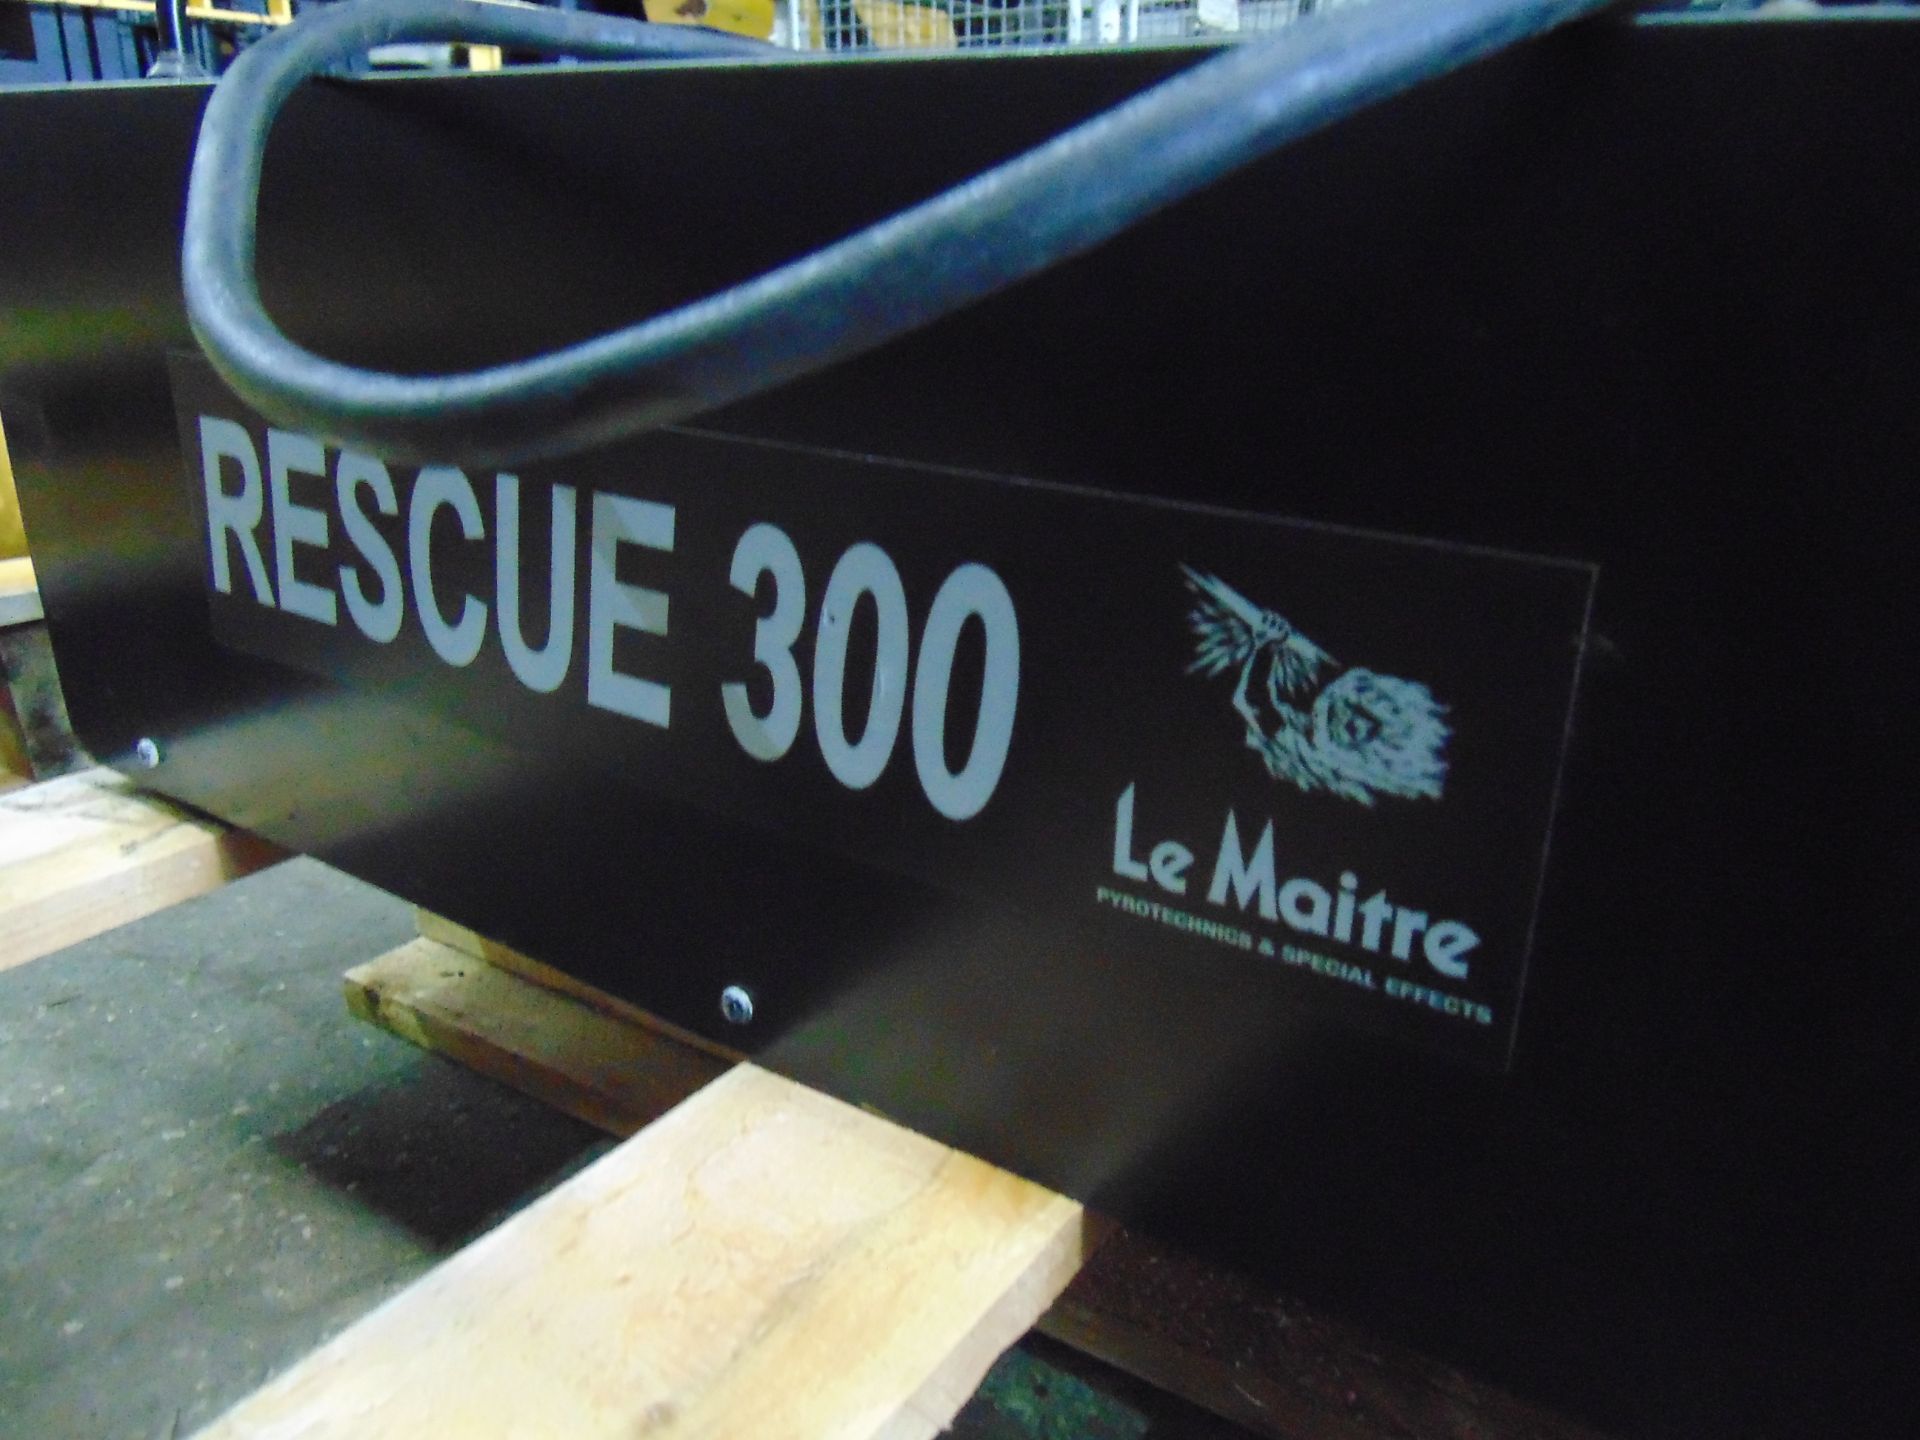 Le Maitre Rescue 300 Smoke Machine - Image 4 of 4